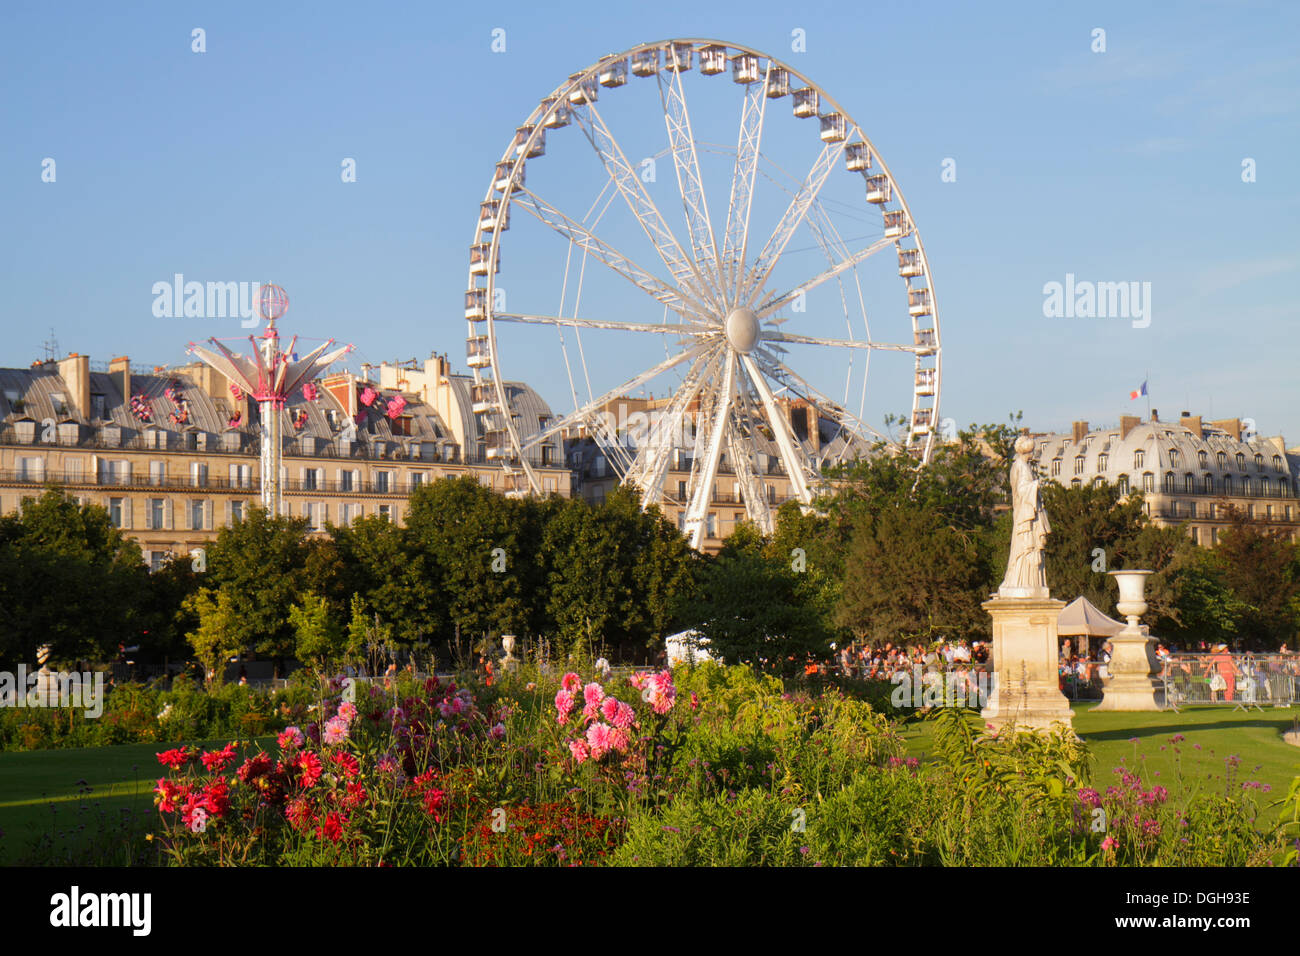 Paris France,8th arrondissement,Tuileries Garden,Jardin des Tuileries,park,Ferris wheel,La Grande Roue,Haussmann buildings,France130815104 Stock Photo